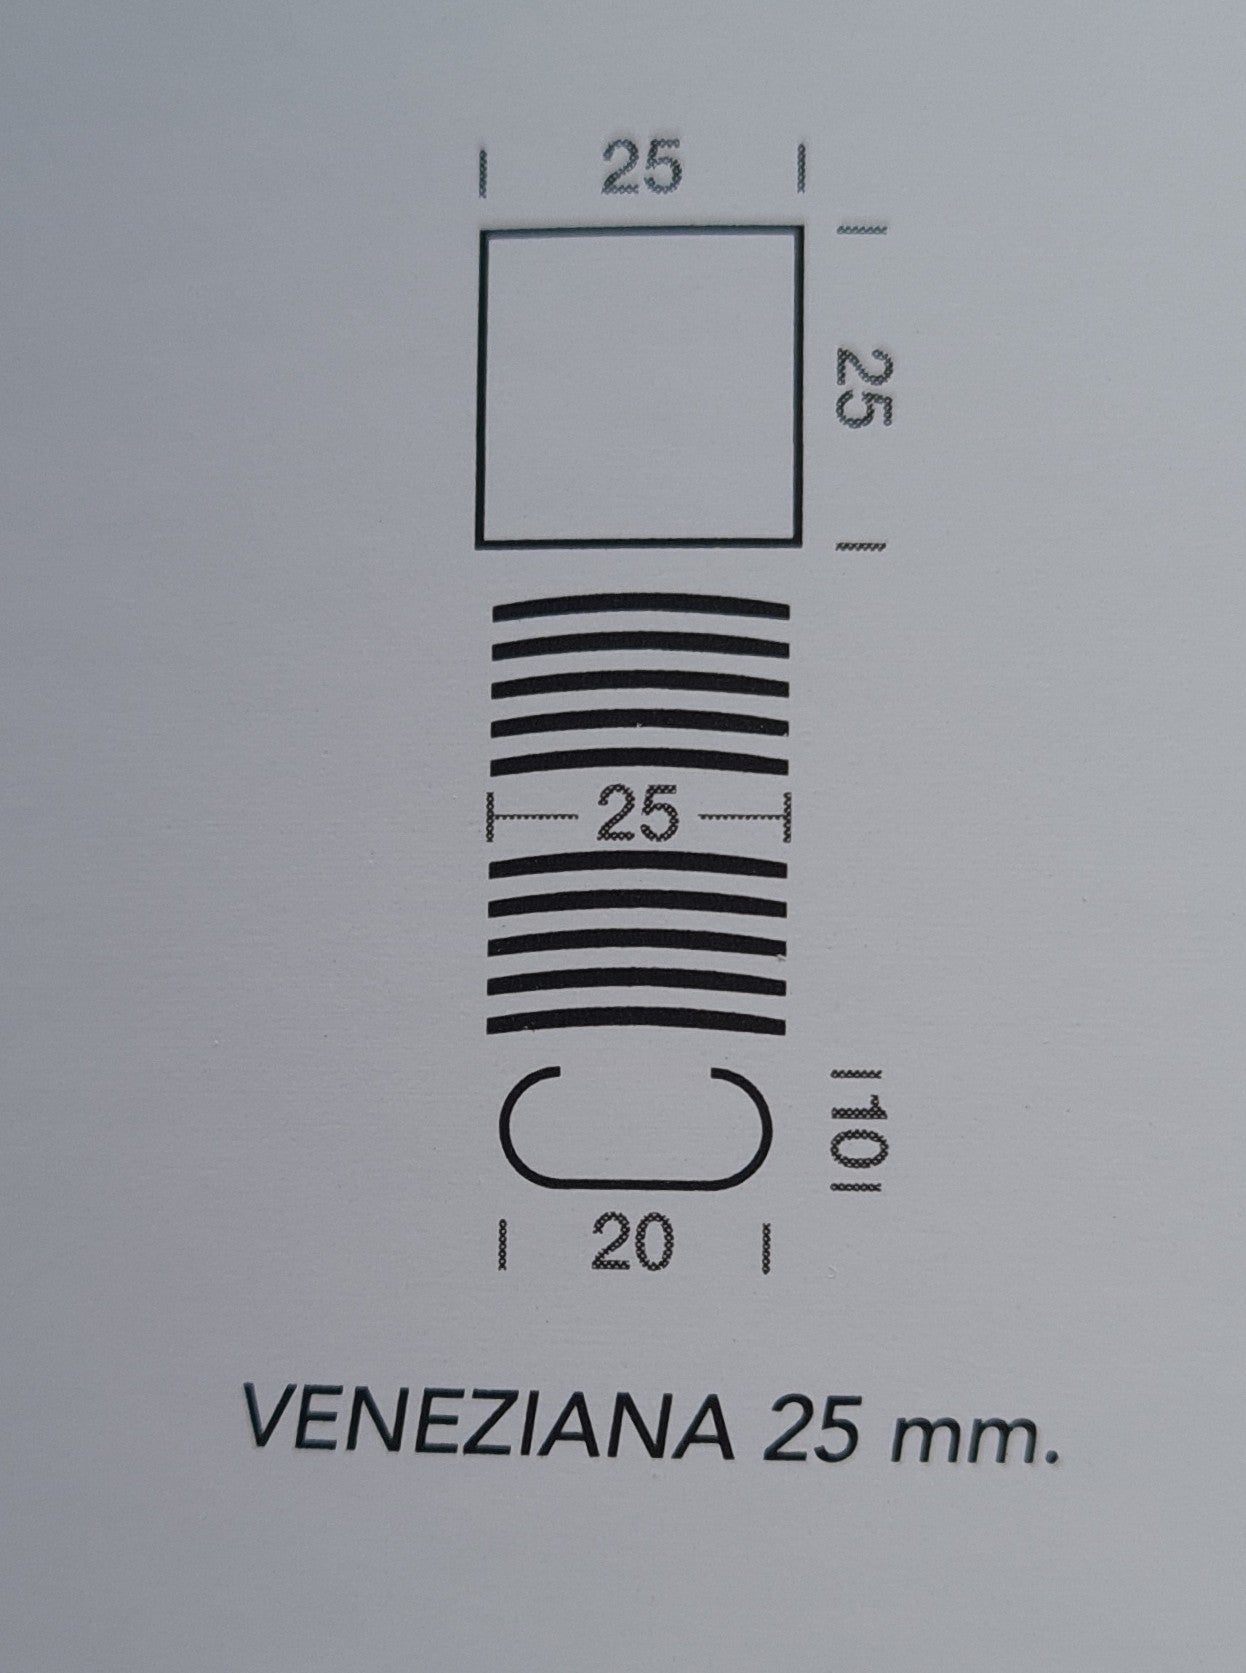 Veneziana da 25mm – EMMEPIDUE